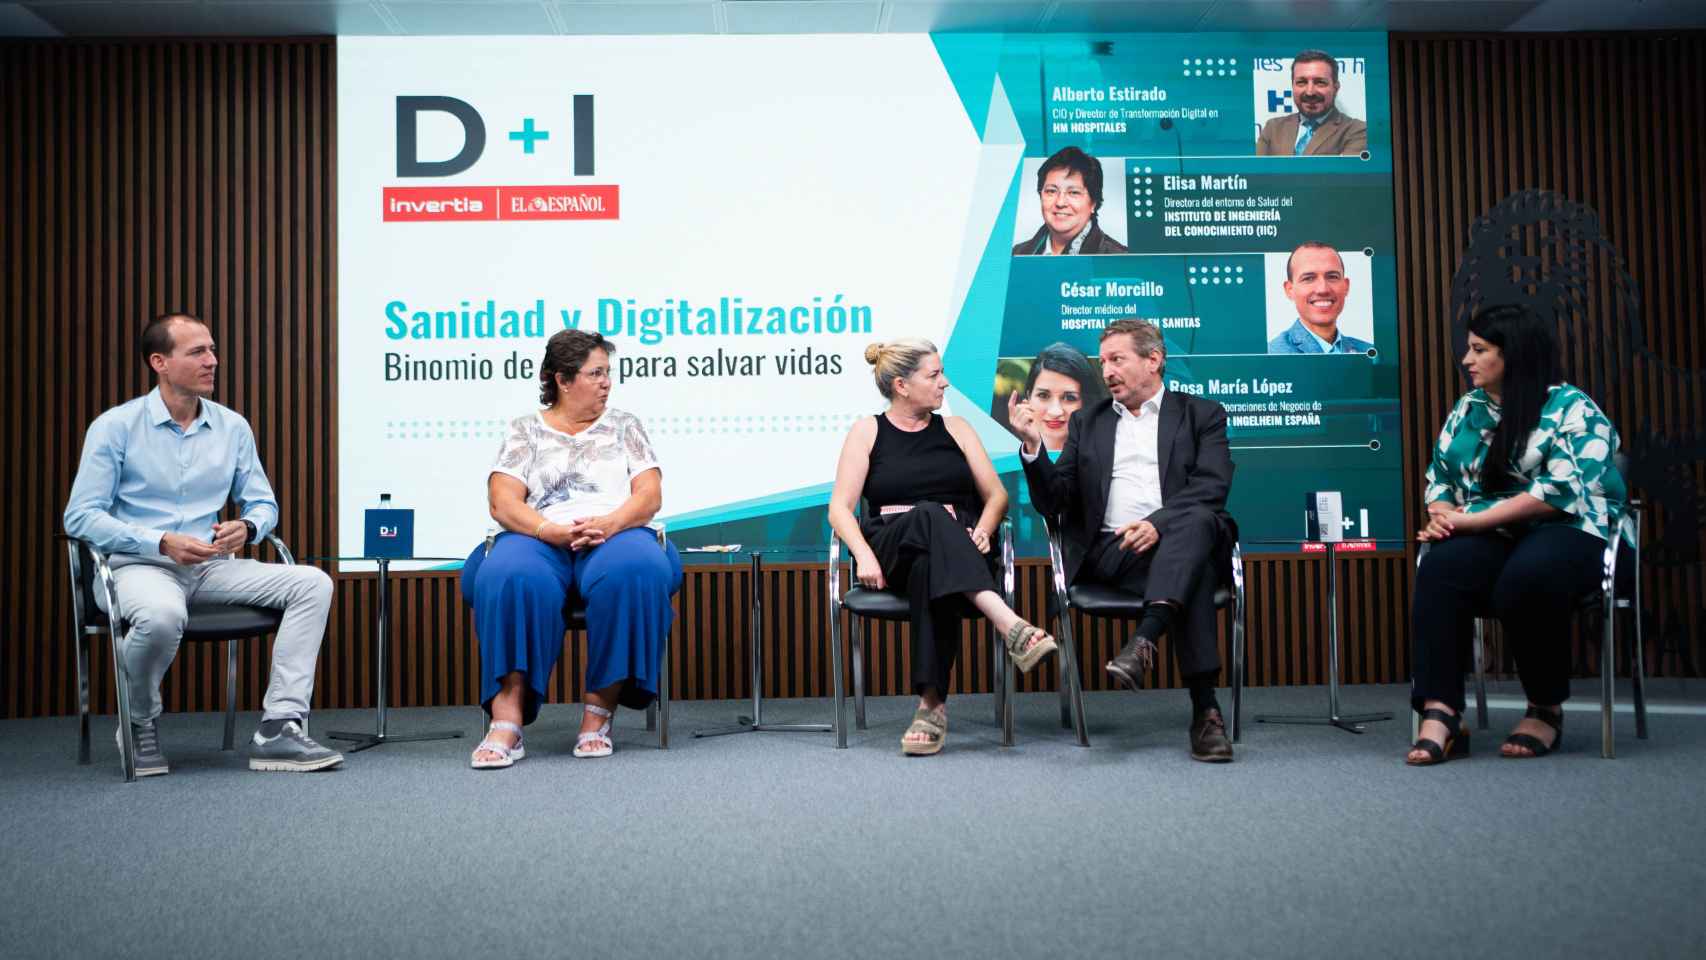 César Morcillo (Sanitas), Rosa María López Carneros (Boehringer Ingelheim), Mar Carpena (D+I), Elisa Martín (Instituto de Ingeniería del Conocimiento) y Alberto Estirado (HM Hospitales), durante el encuentro.